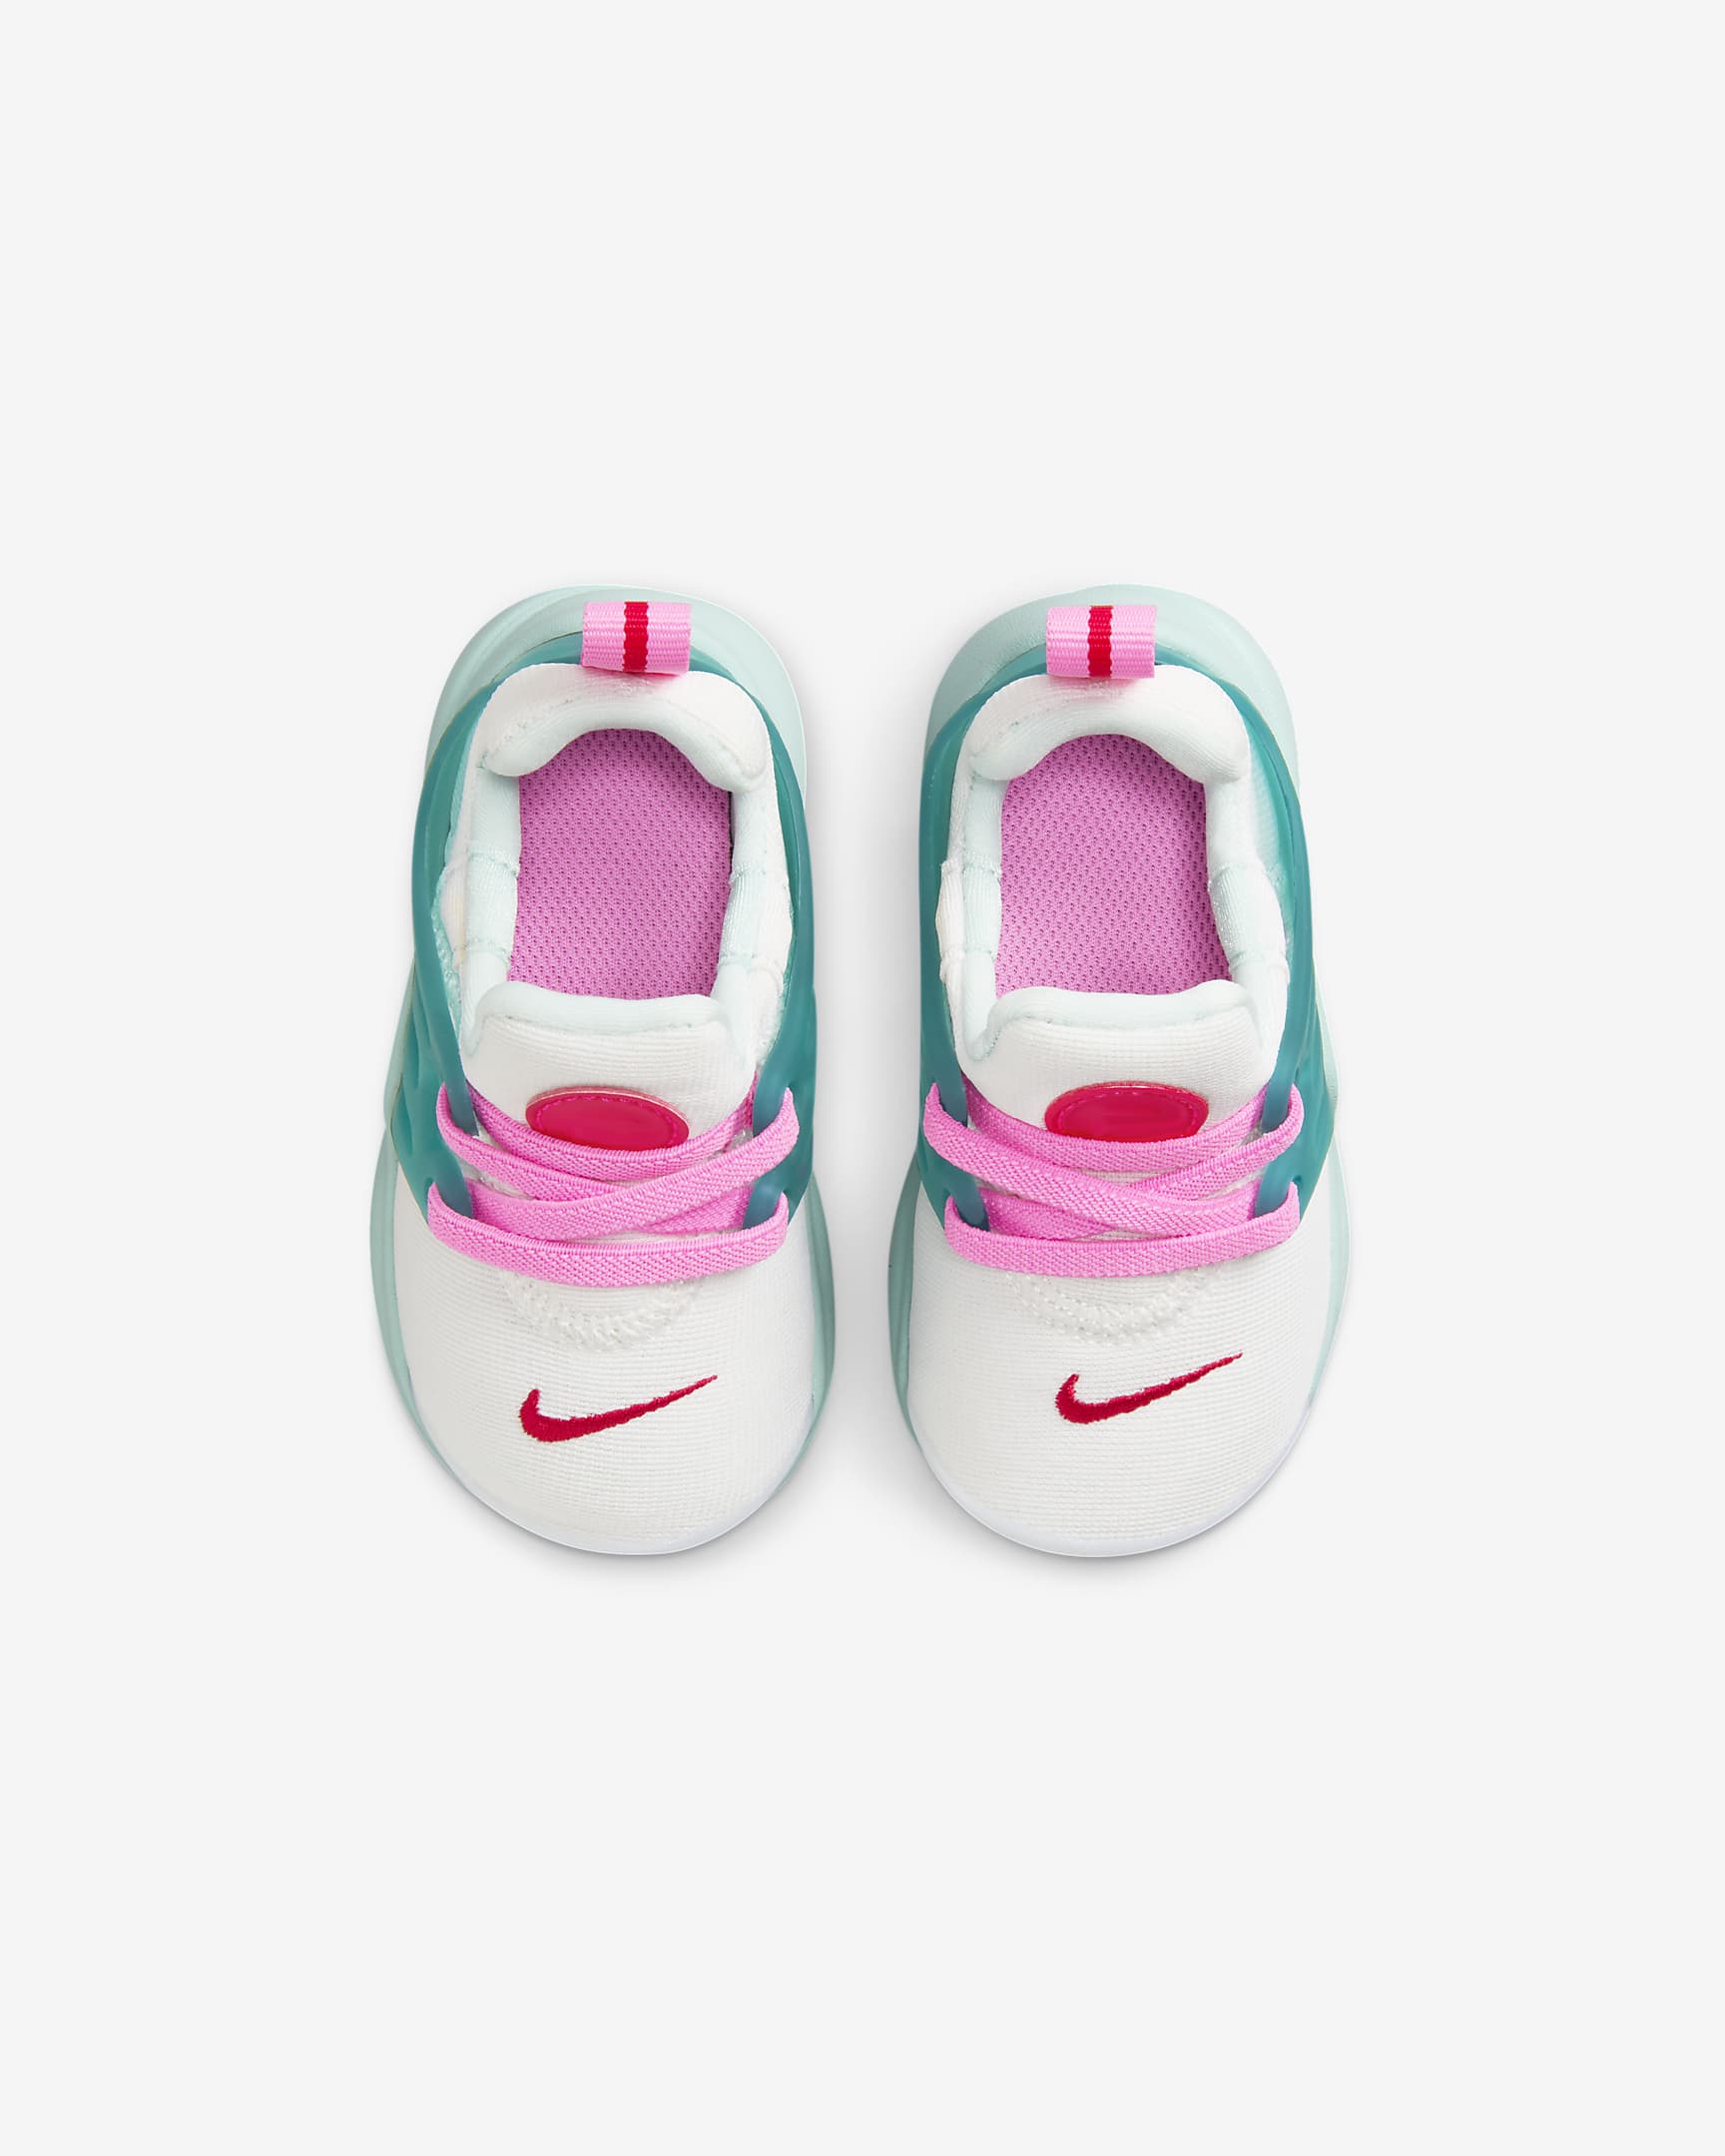 Calzado para bebé e infantil Nike Presto. Nike.com